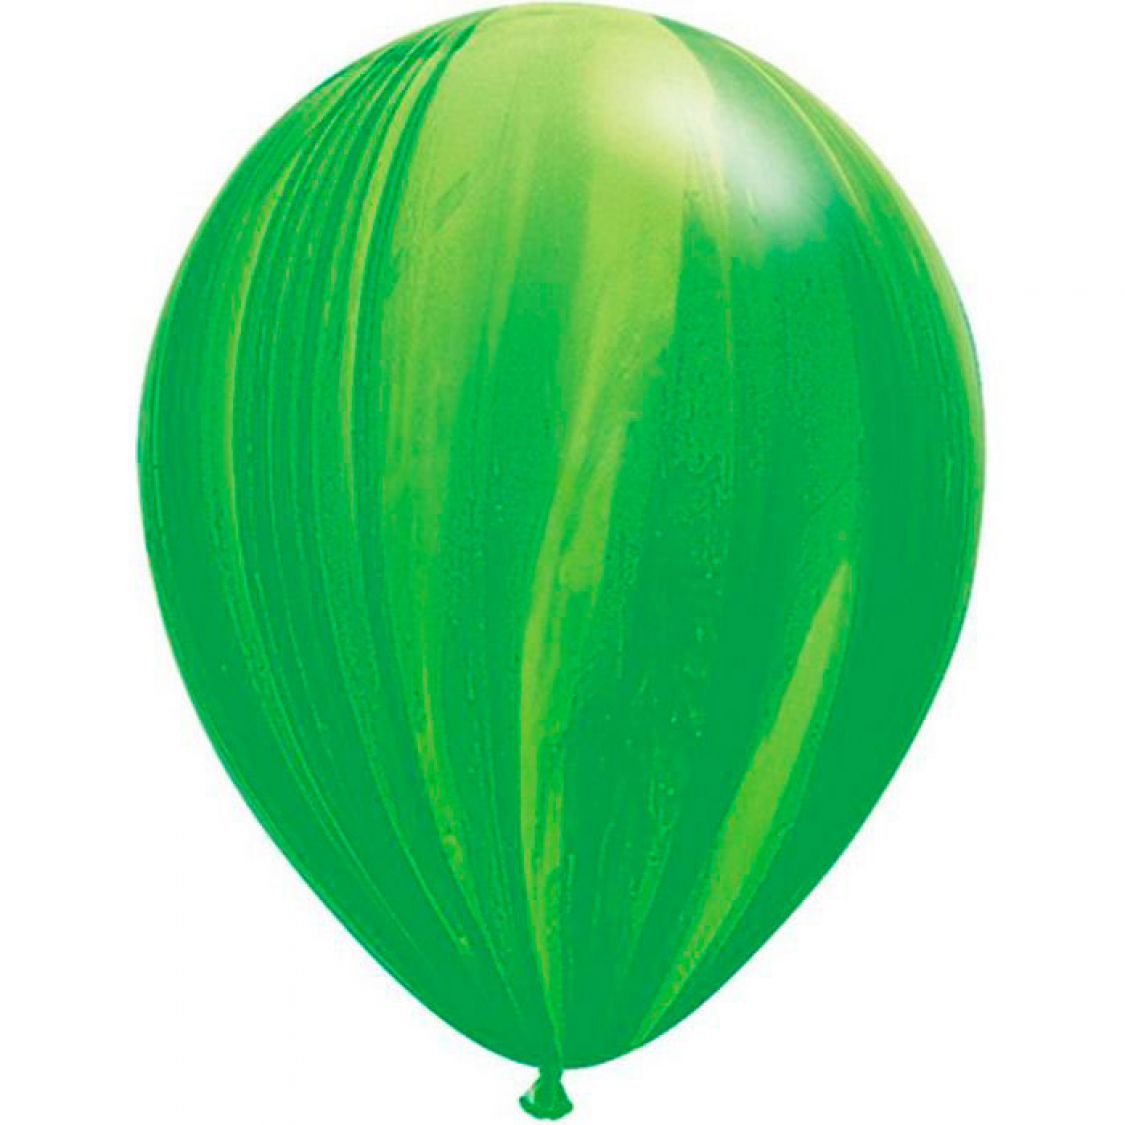 Ballon Vert (Green Rainbow)